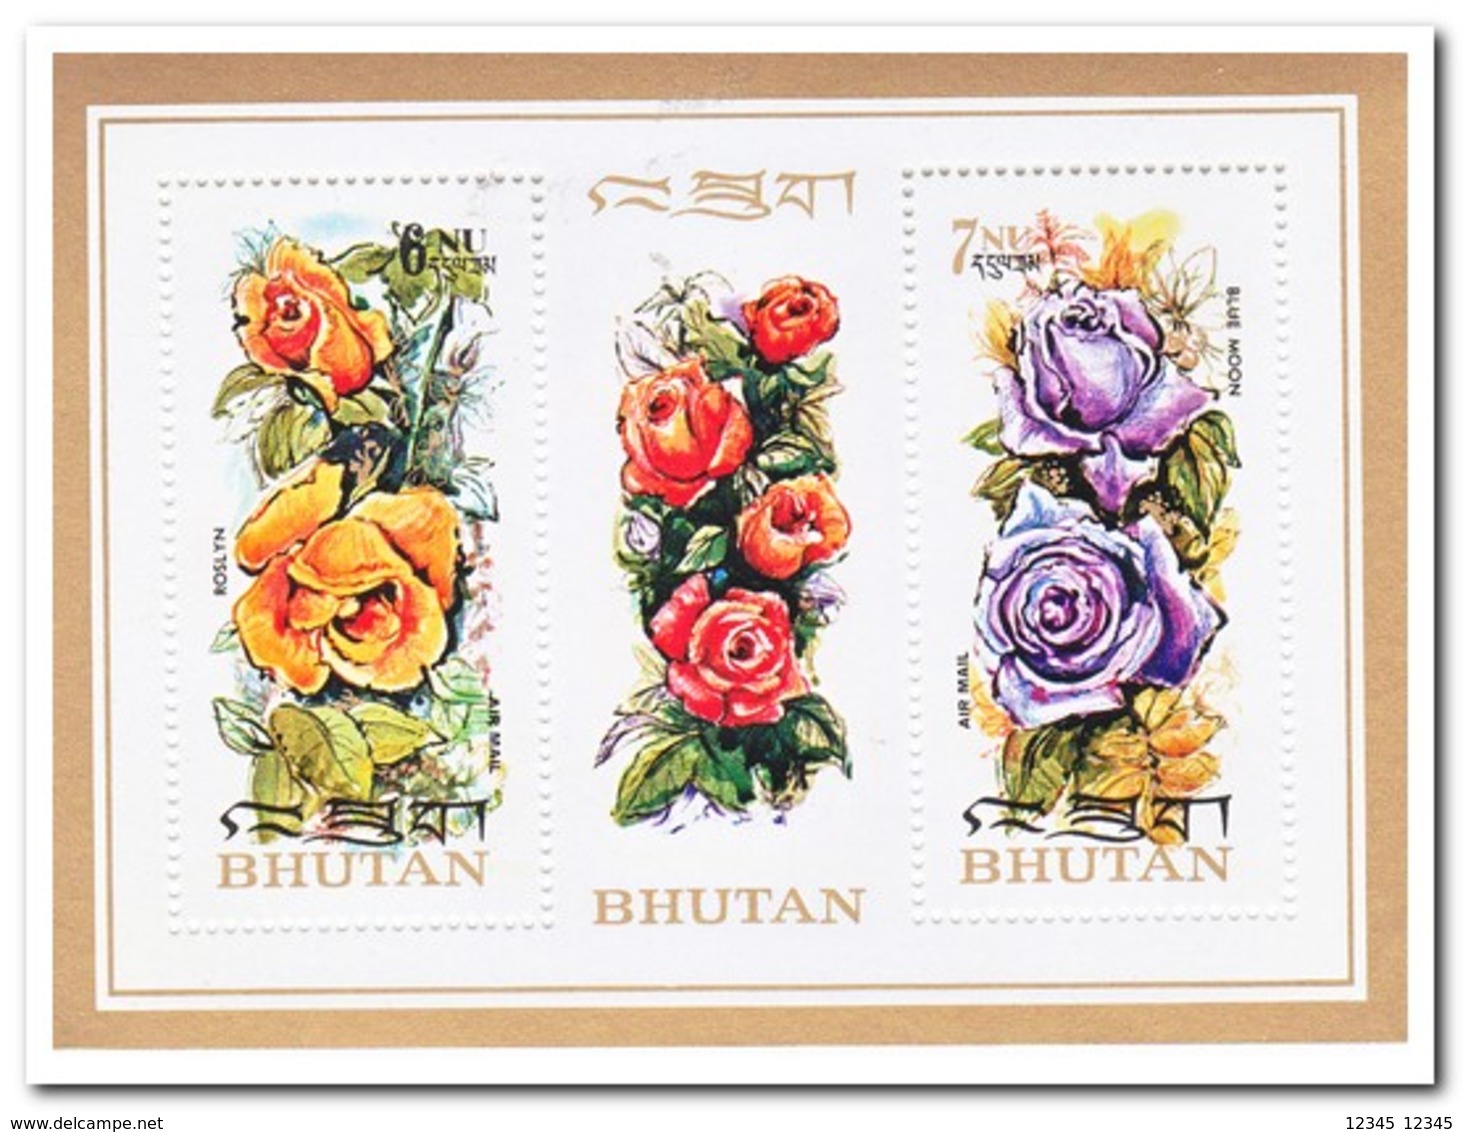 Bhutan 1973, Postfris MNH, Flowers, Roses - Bhutan